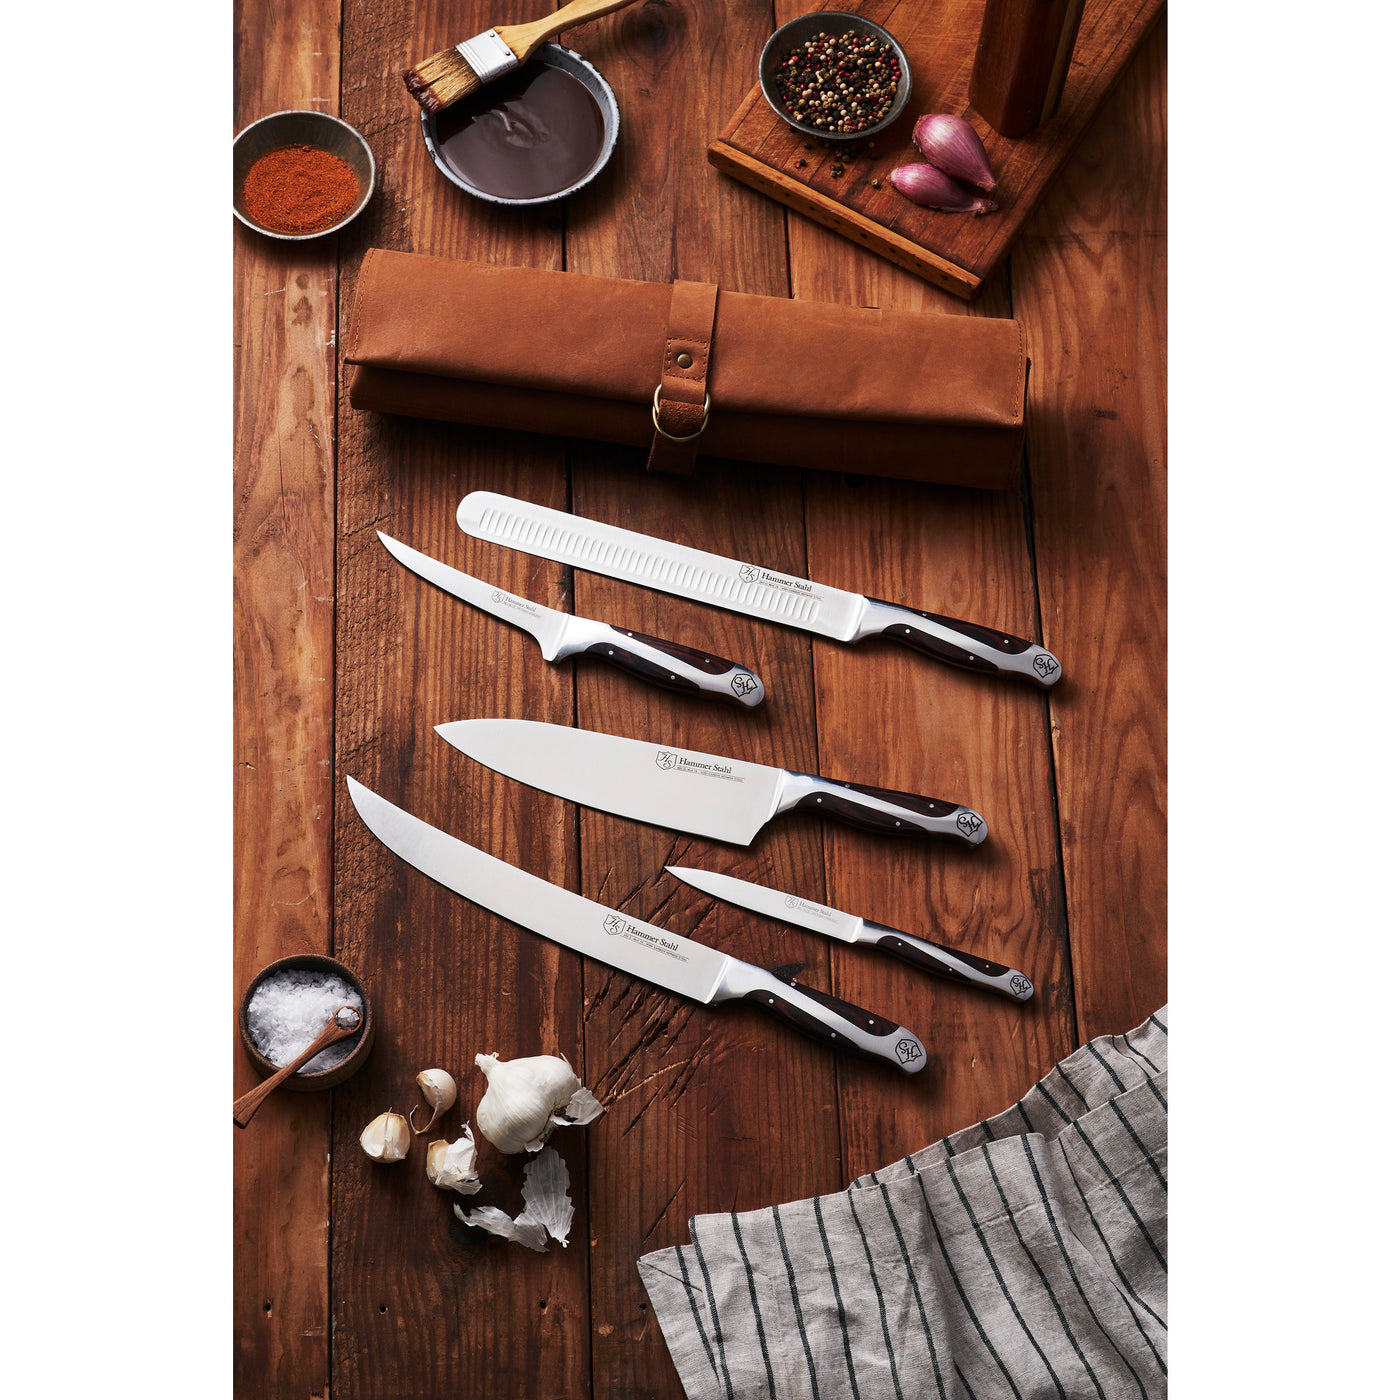 Hammerstahl 4 Piece Steak Knife Set - The Kitchen Table